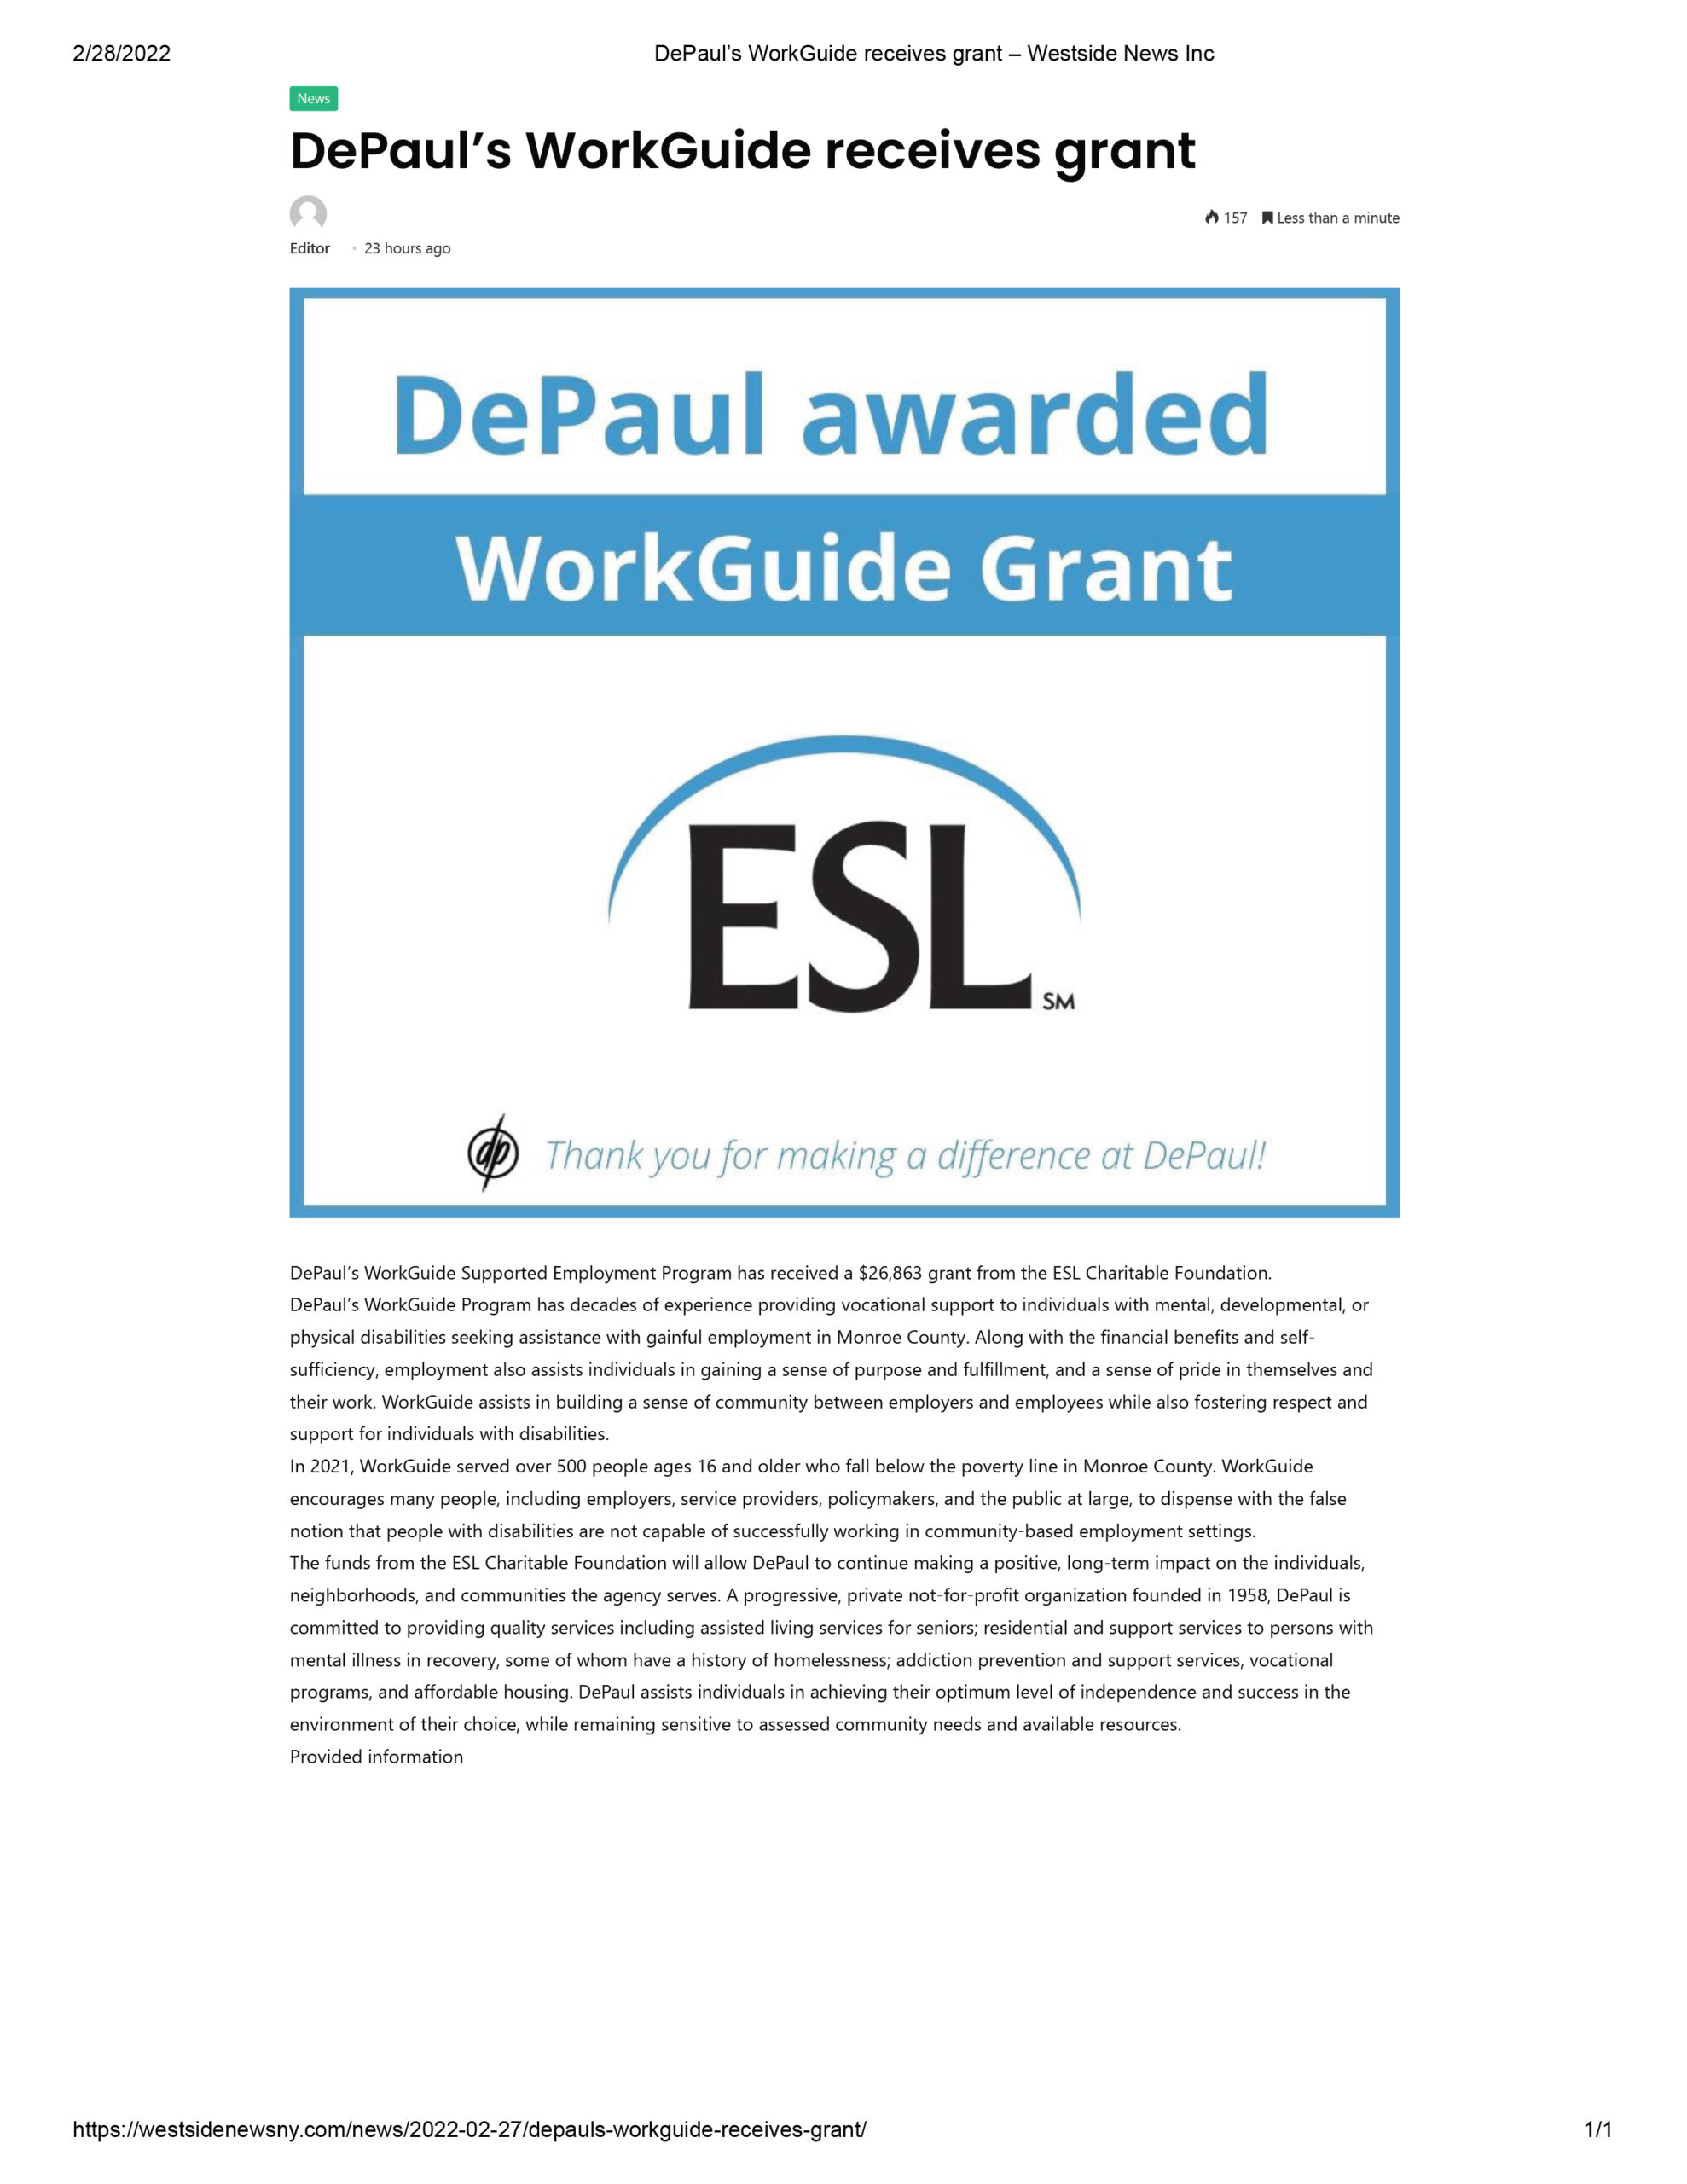 DePaul’s WorkGuide Receives Grant – Westside News Inc